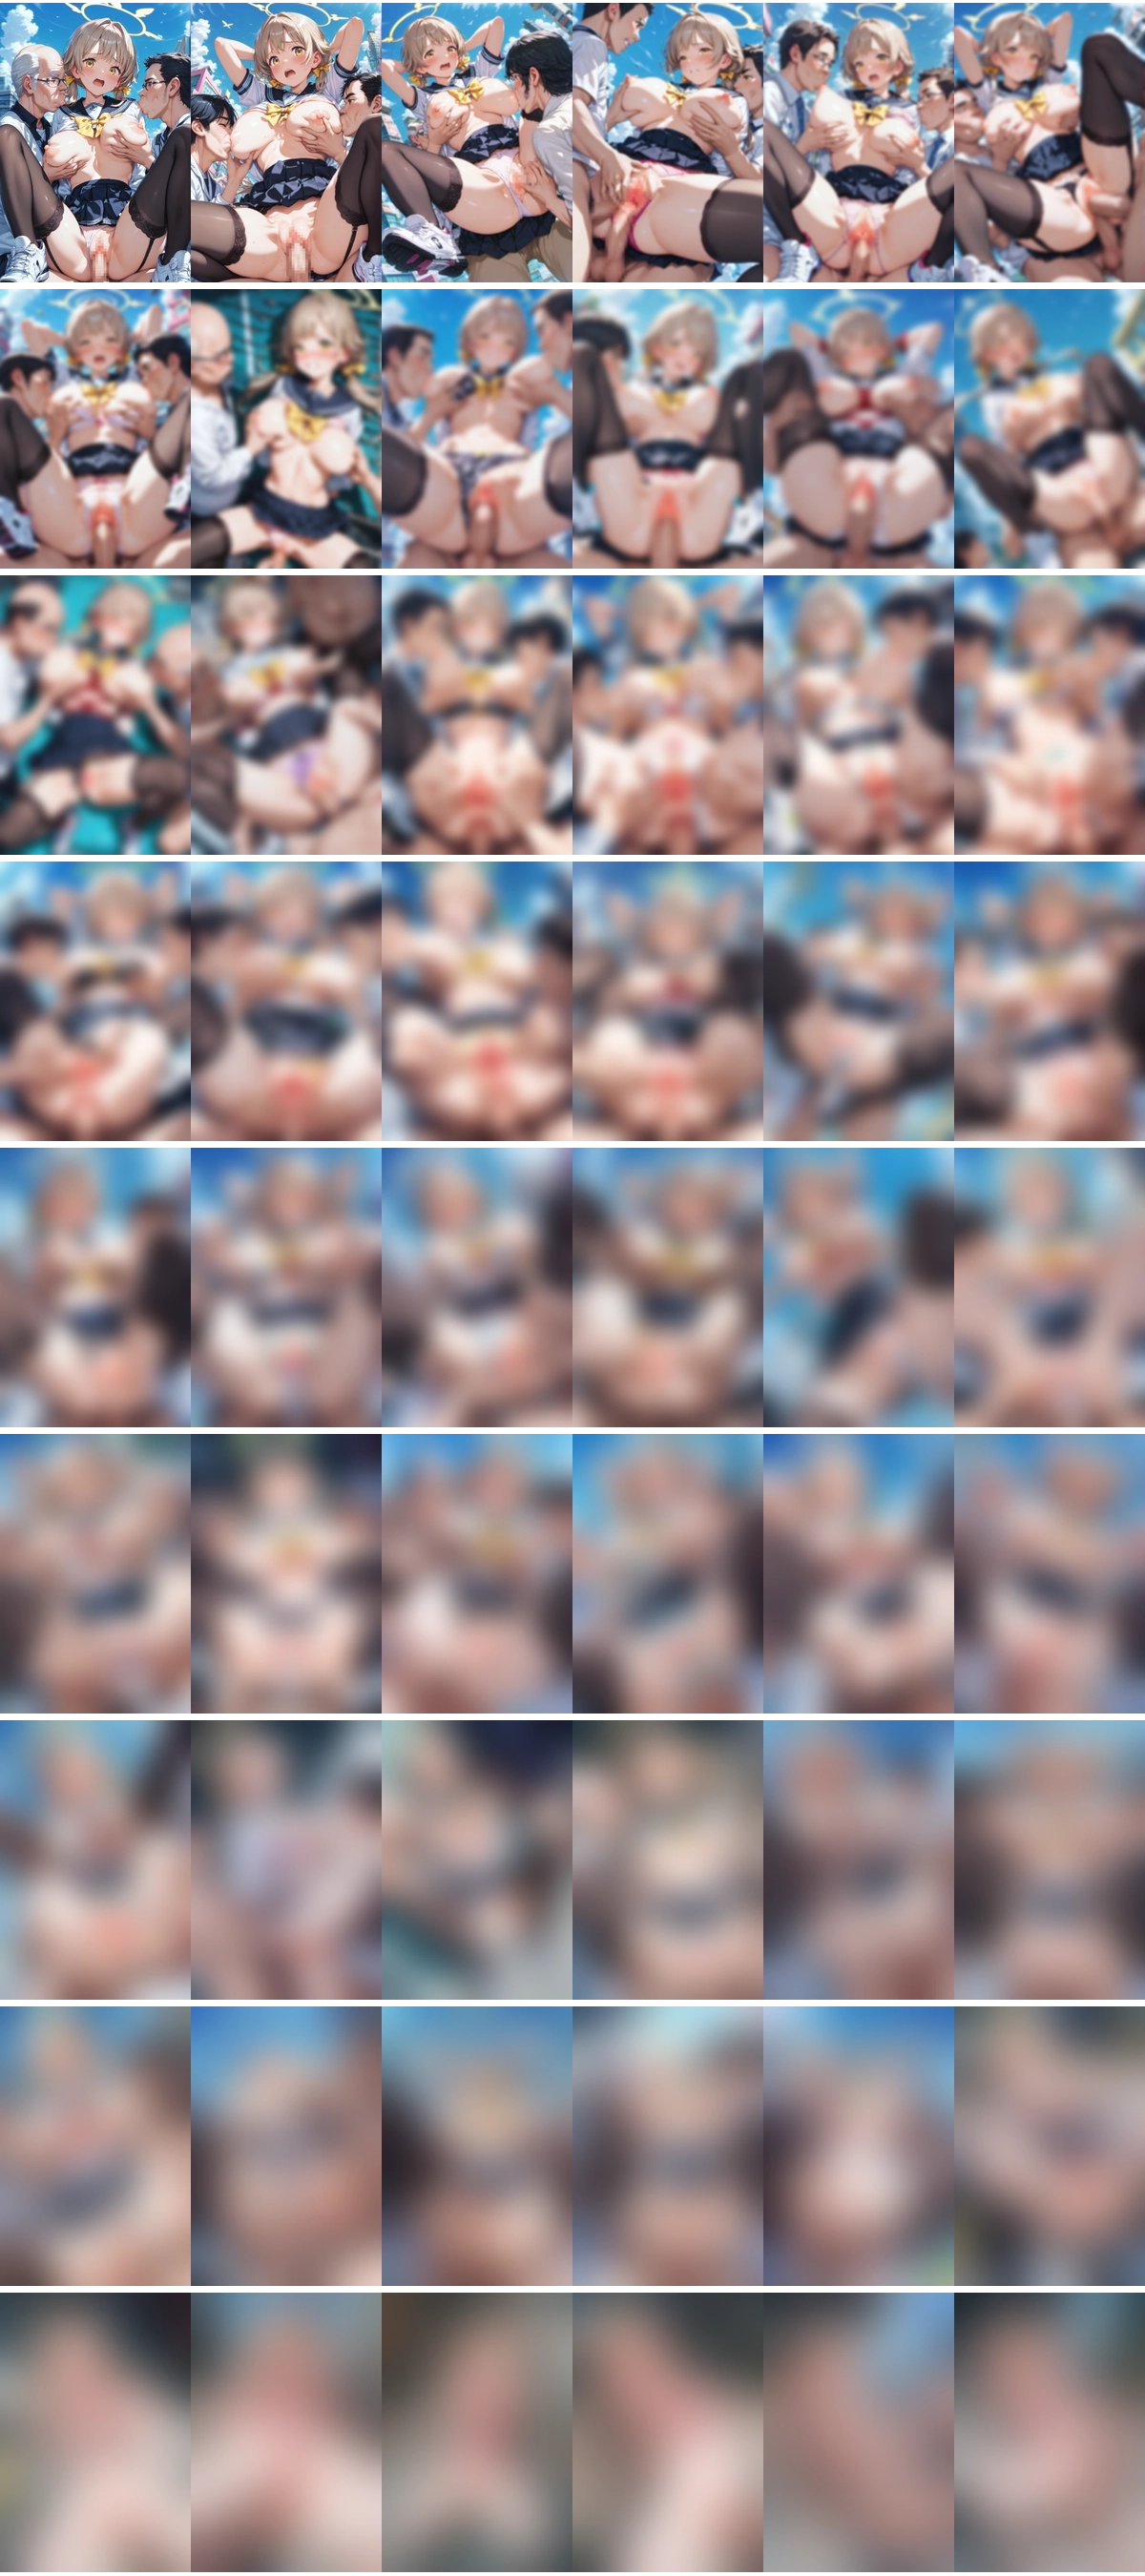 乳を吸われマンコをくぱぁされて犯される阿慈谷ヒフミちゃんのAIエロ画像 54pic【ブルーアーカイブ】